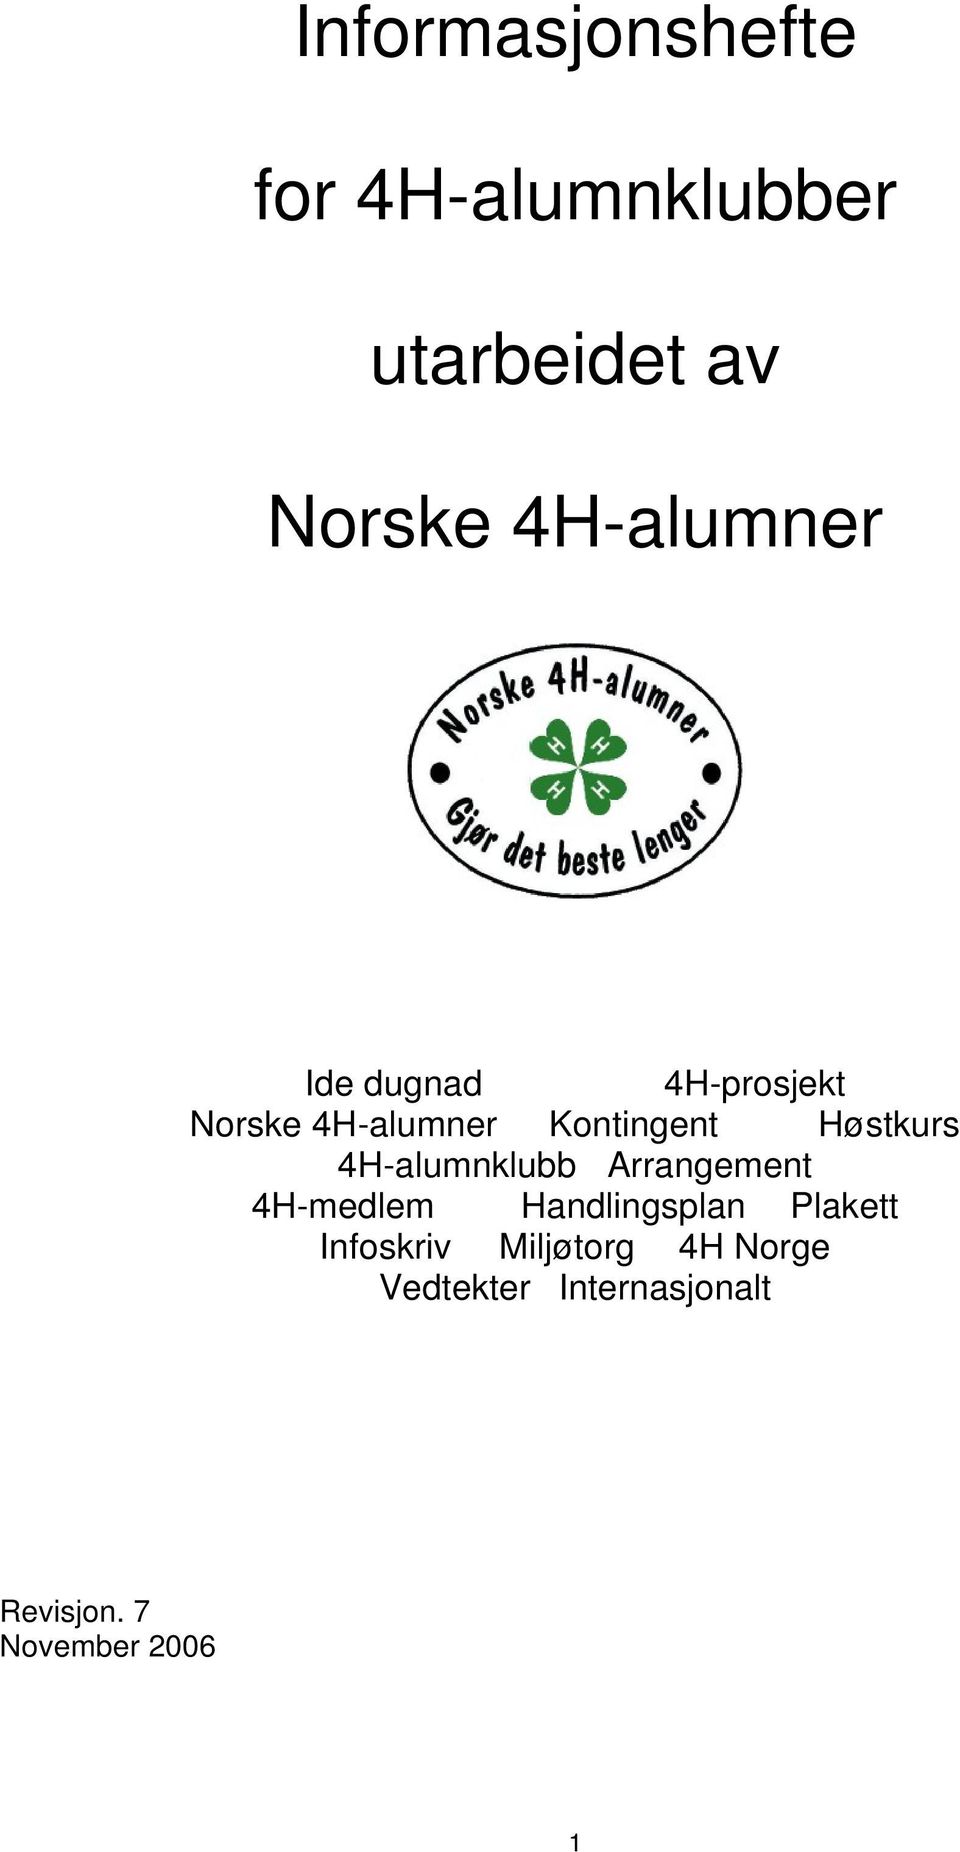 Høstkurs 4H-alumnklubb Arrangement 4H-medlem Handlingsplan Plakett